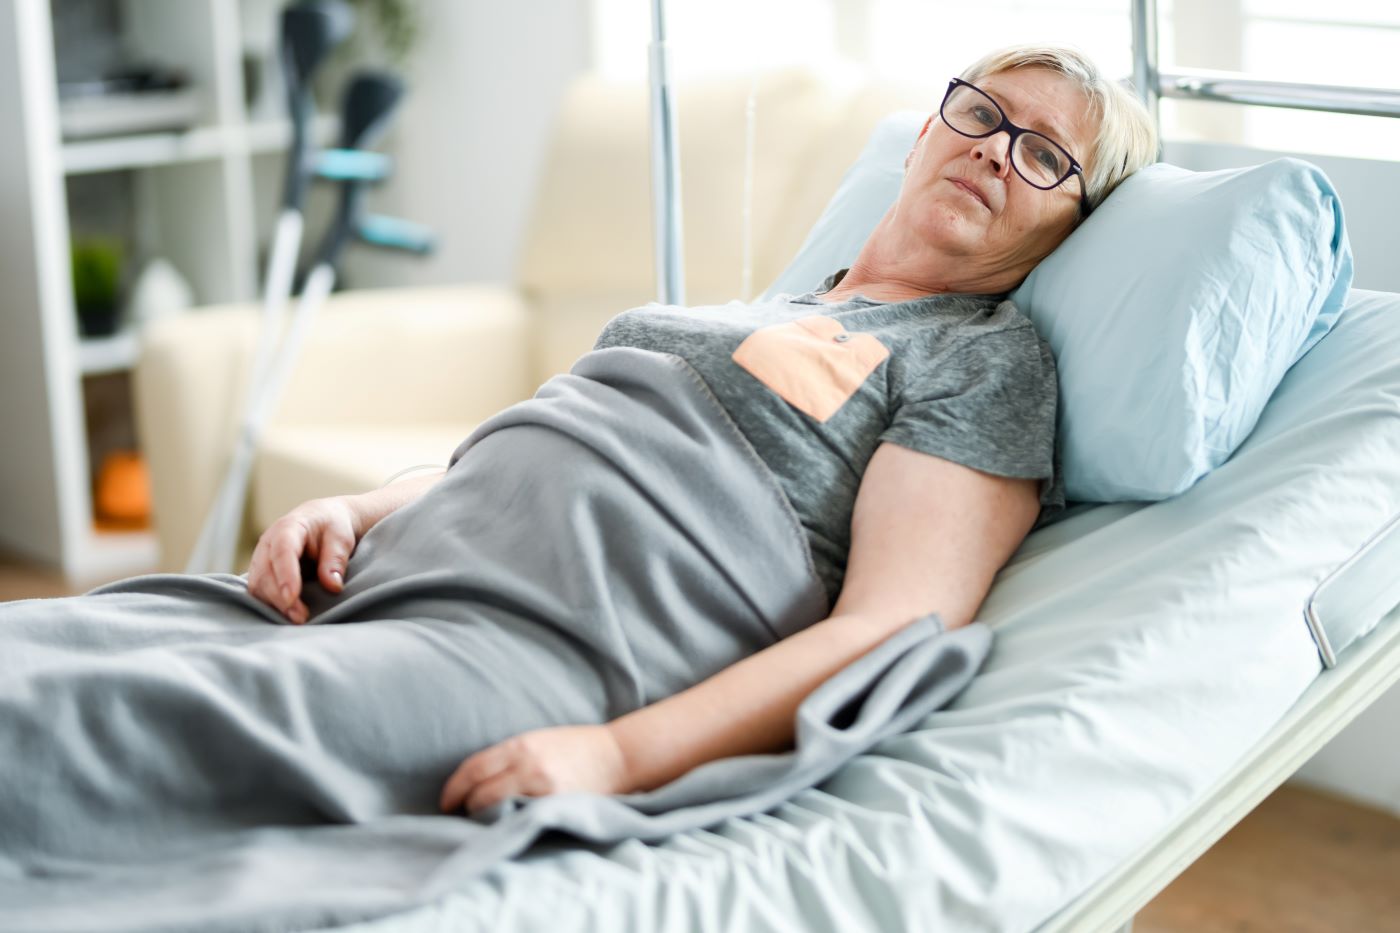 Ingrijirea bolnavului imobilizat la pat: 5 lucruri bine de stiut